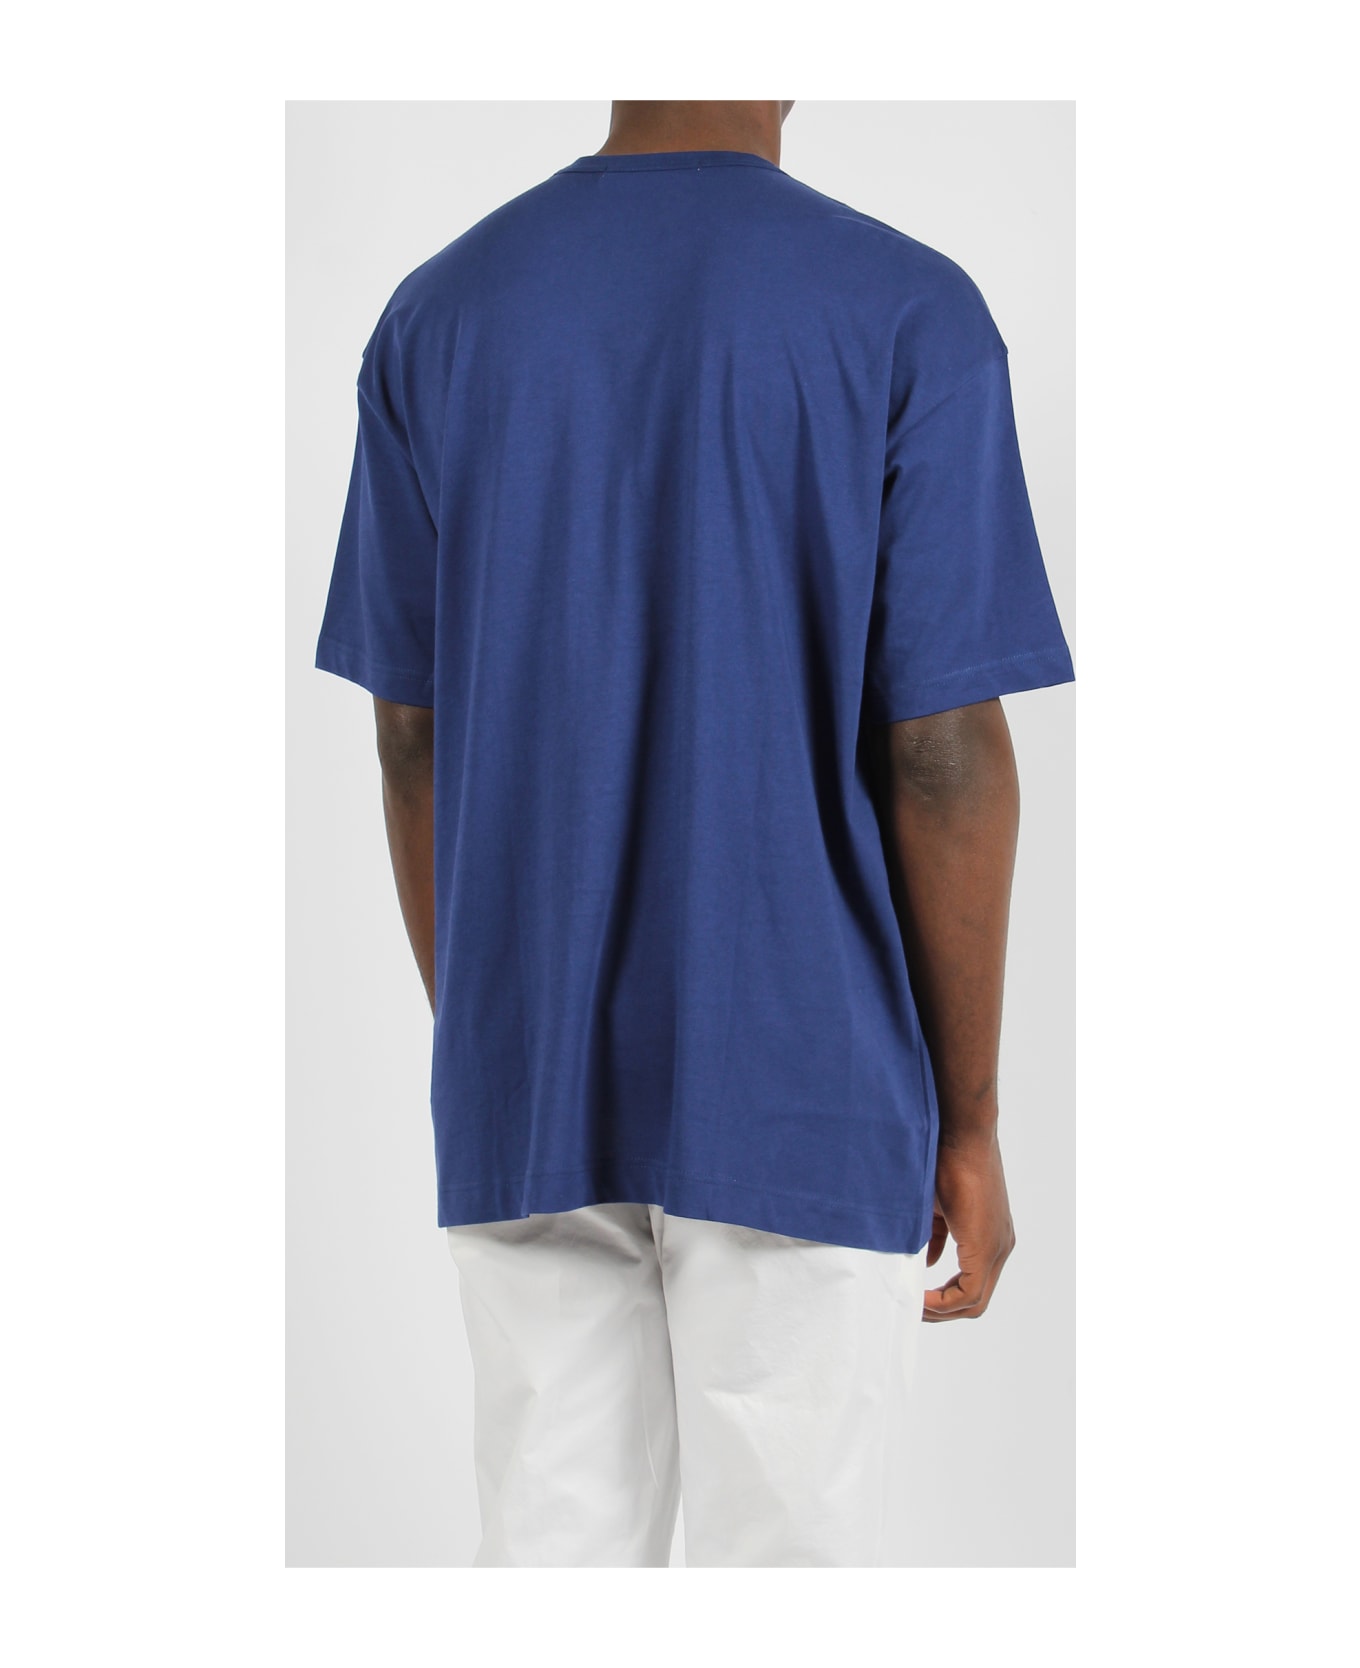 Comme des Garçons Shirt Jersey Cotton Basic T-shirt - Blue シャツ